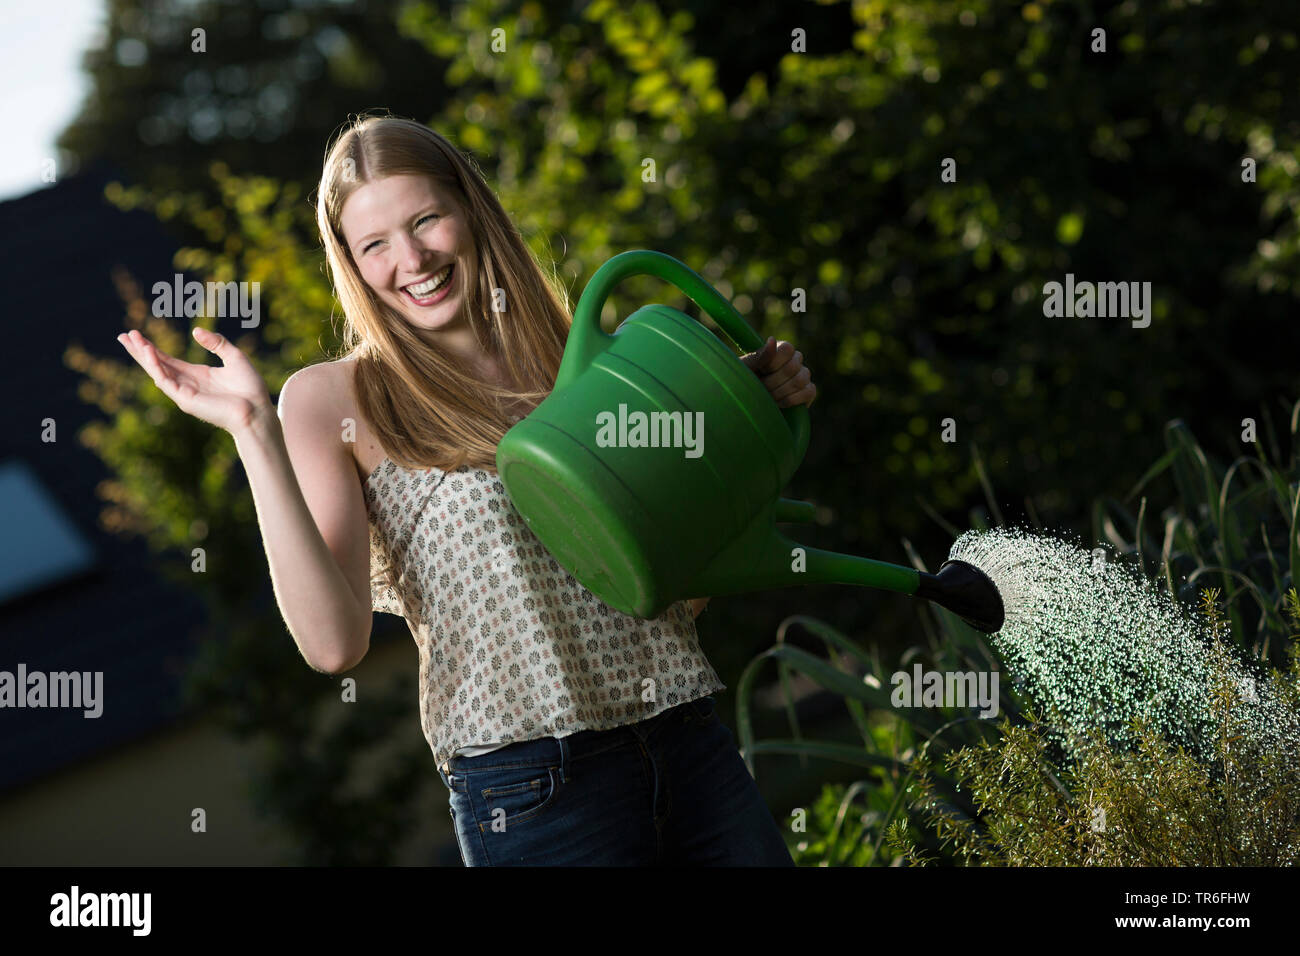 Jeune femme riant un potager arrosage avec un arrosoir, Allemagne Banque D'Images